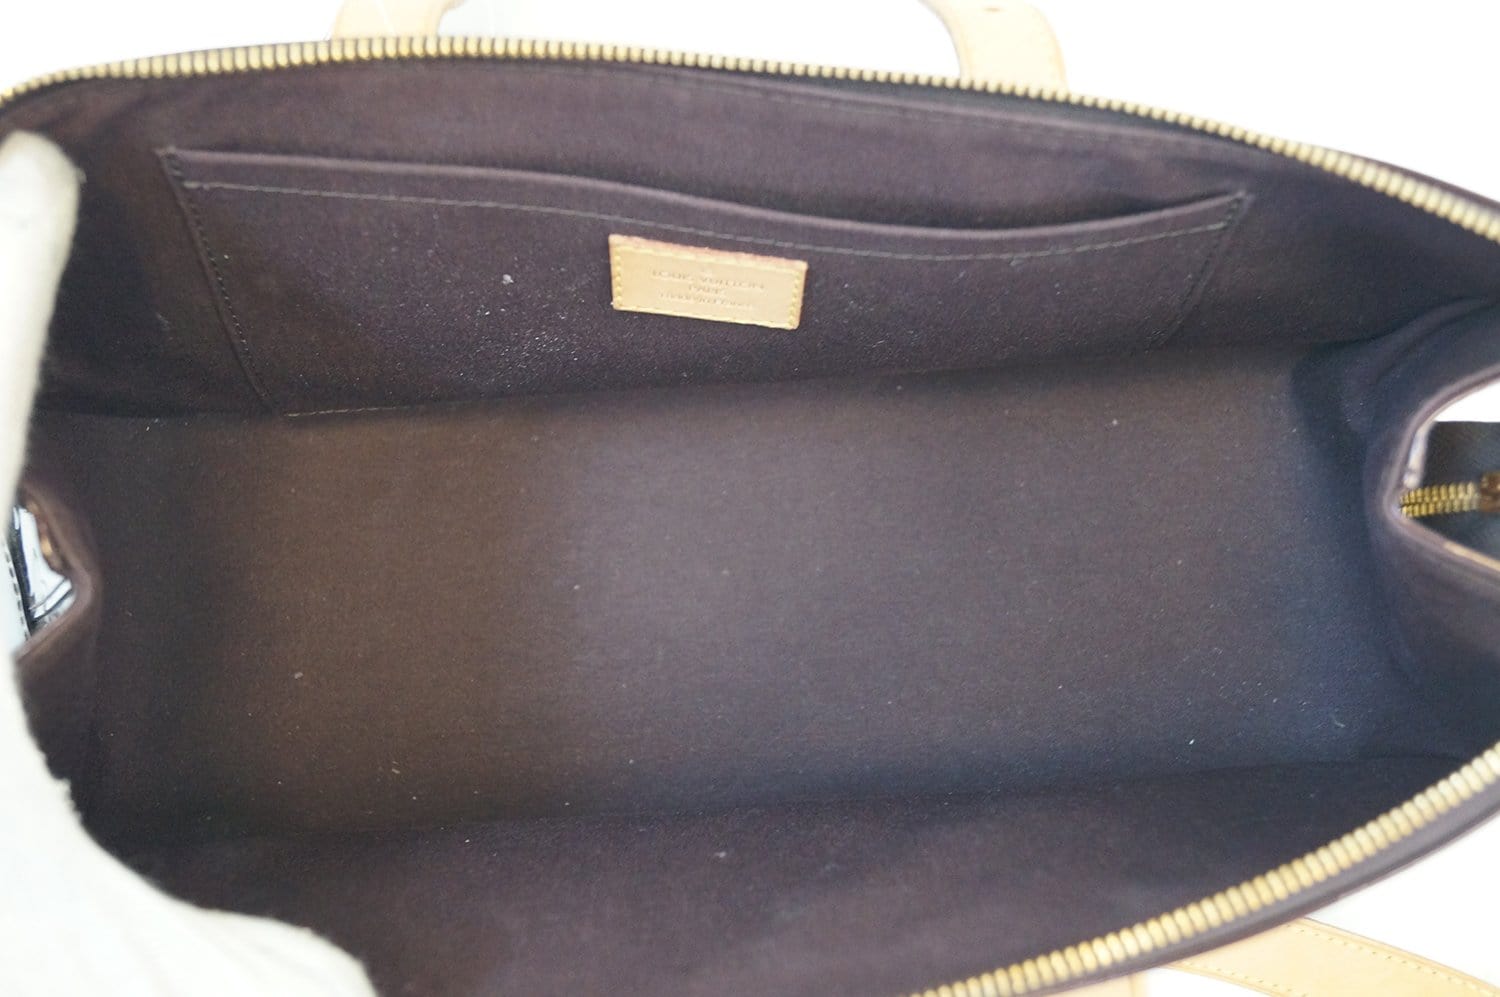 Louis Vuitton Monogram Vernis Rosewood Avenue Handbag Shoulder Bag M93510  Amarant Purple Patent Leather Women's LOUIS VUITTON